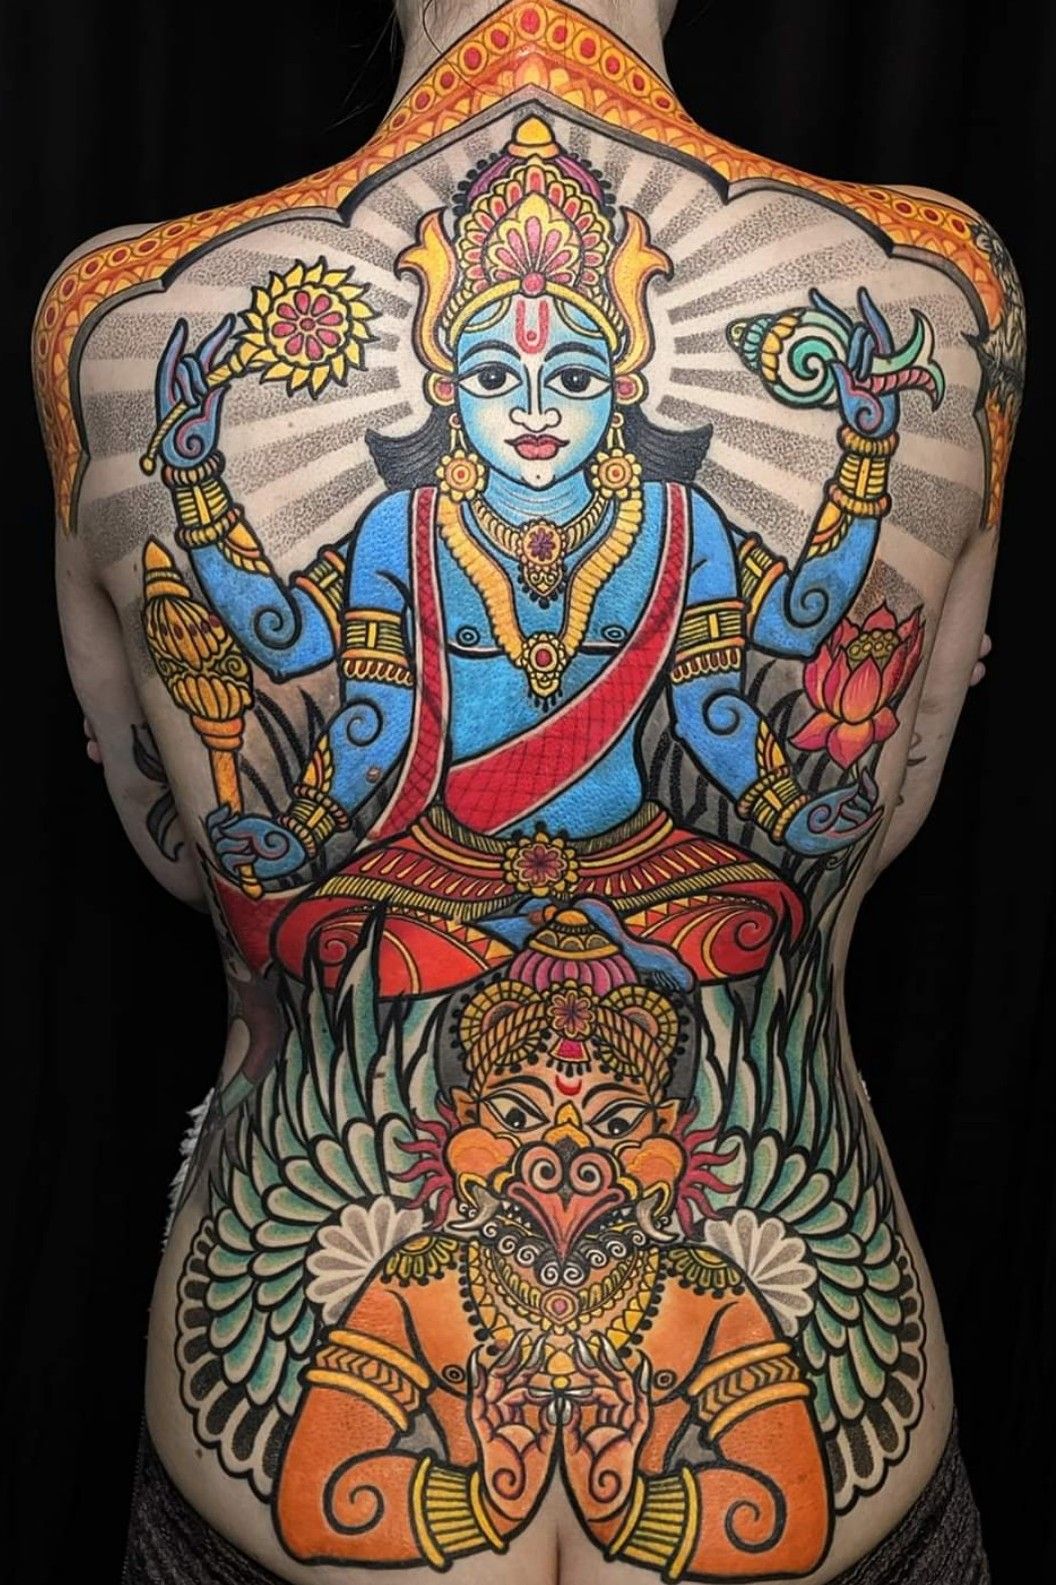 Divine tattoos for Lord Krishna devotees